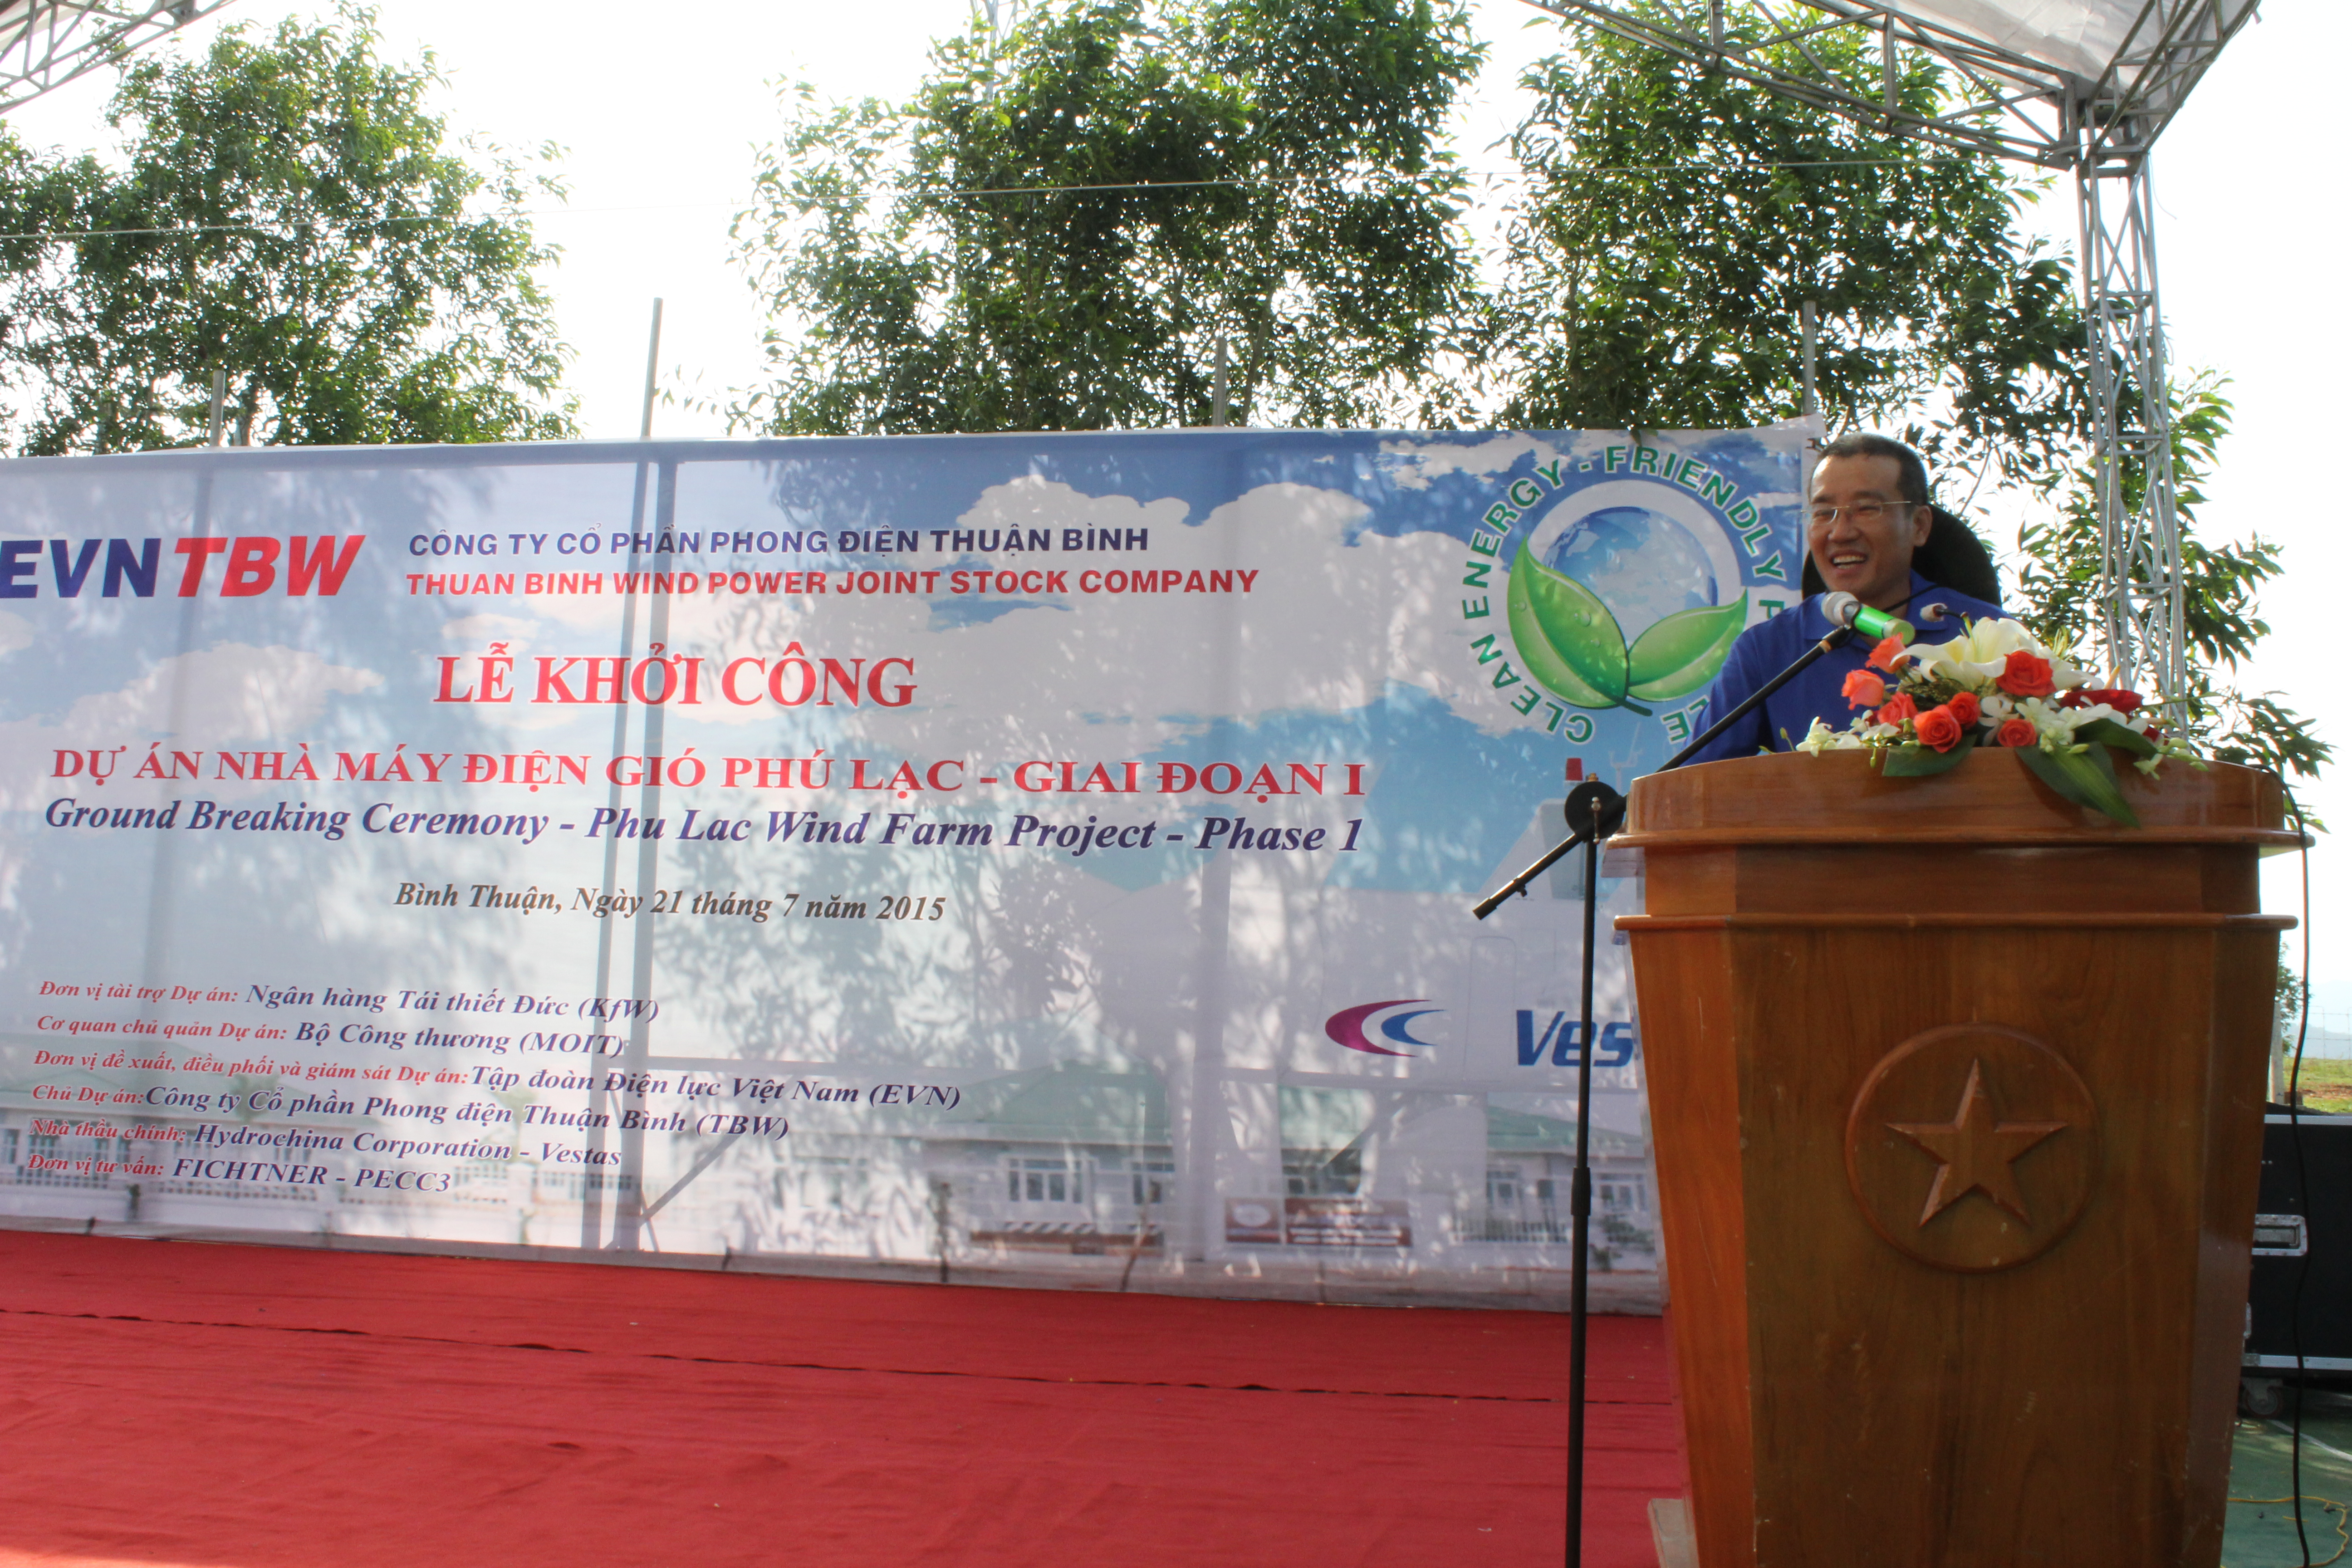 Lễ khởi công xây dựng nhà máy điện gió Phú Lạc-Giai đoạn 1